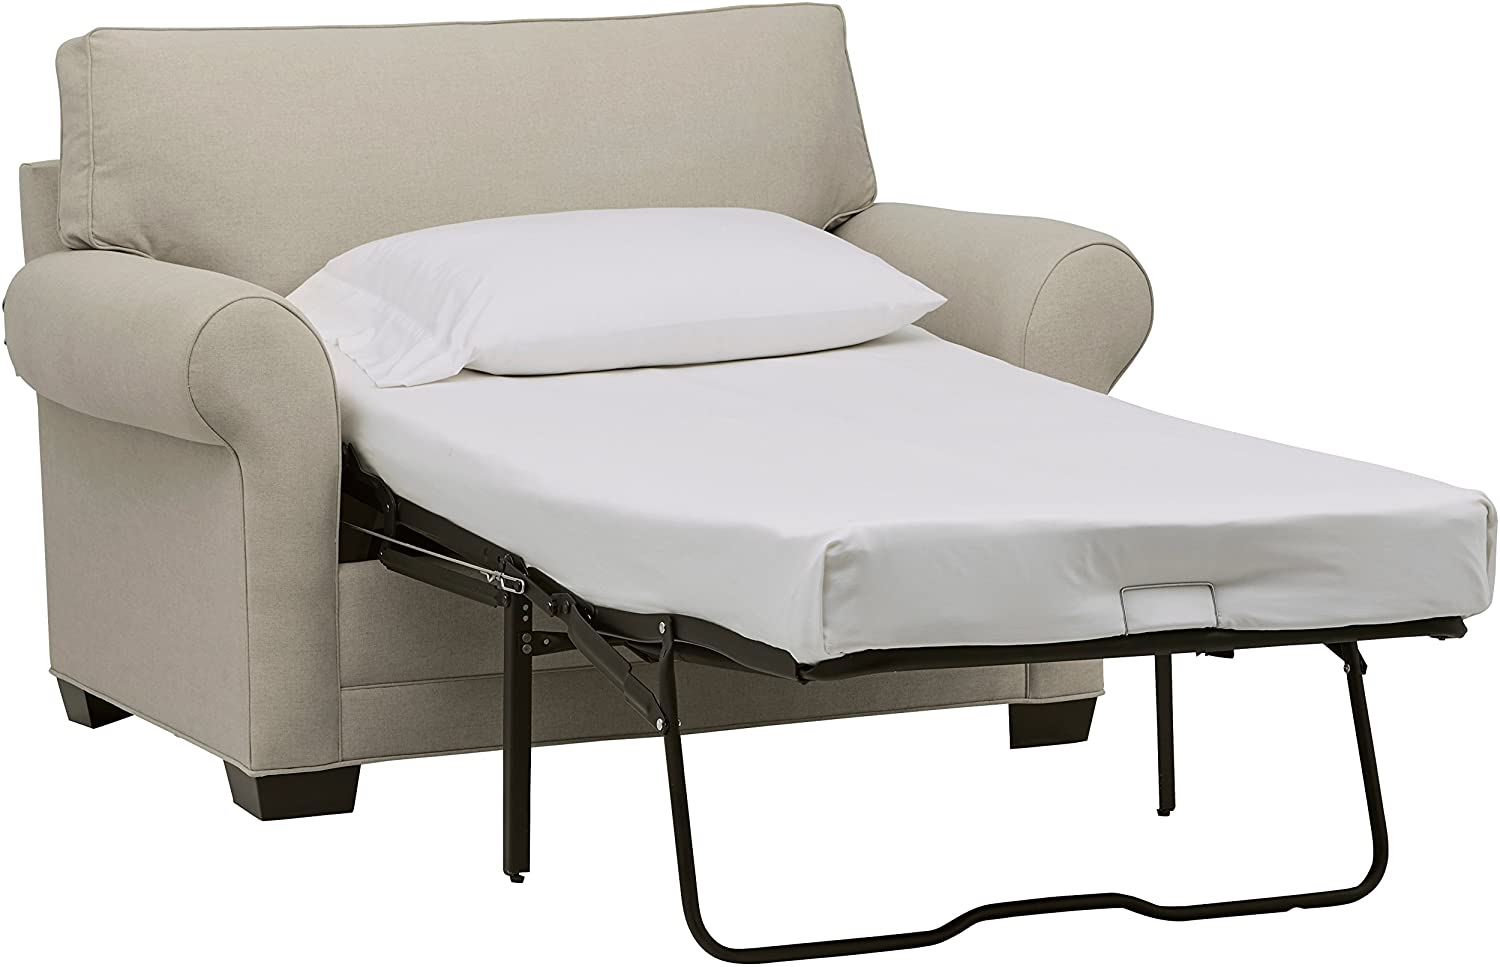 best office mattress chair